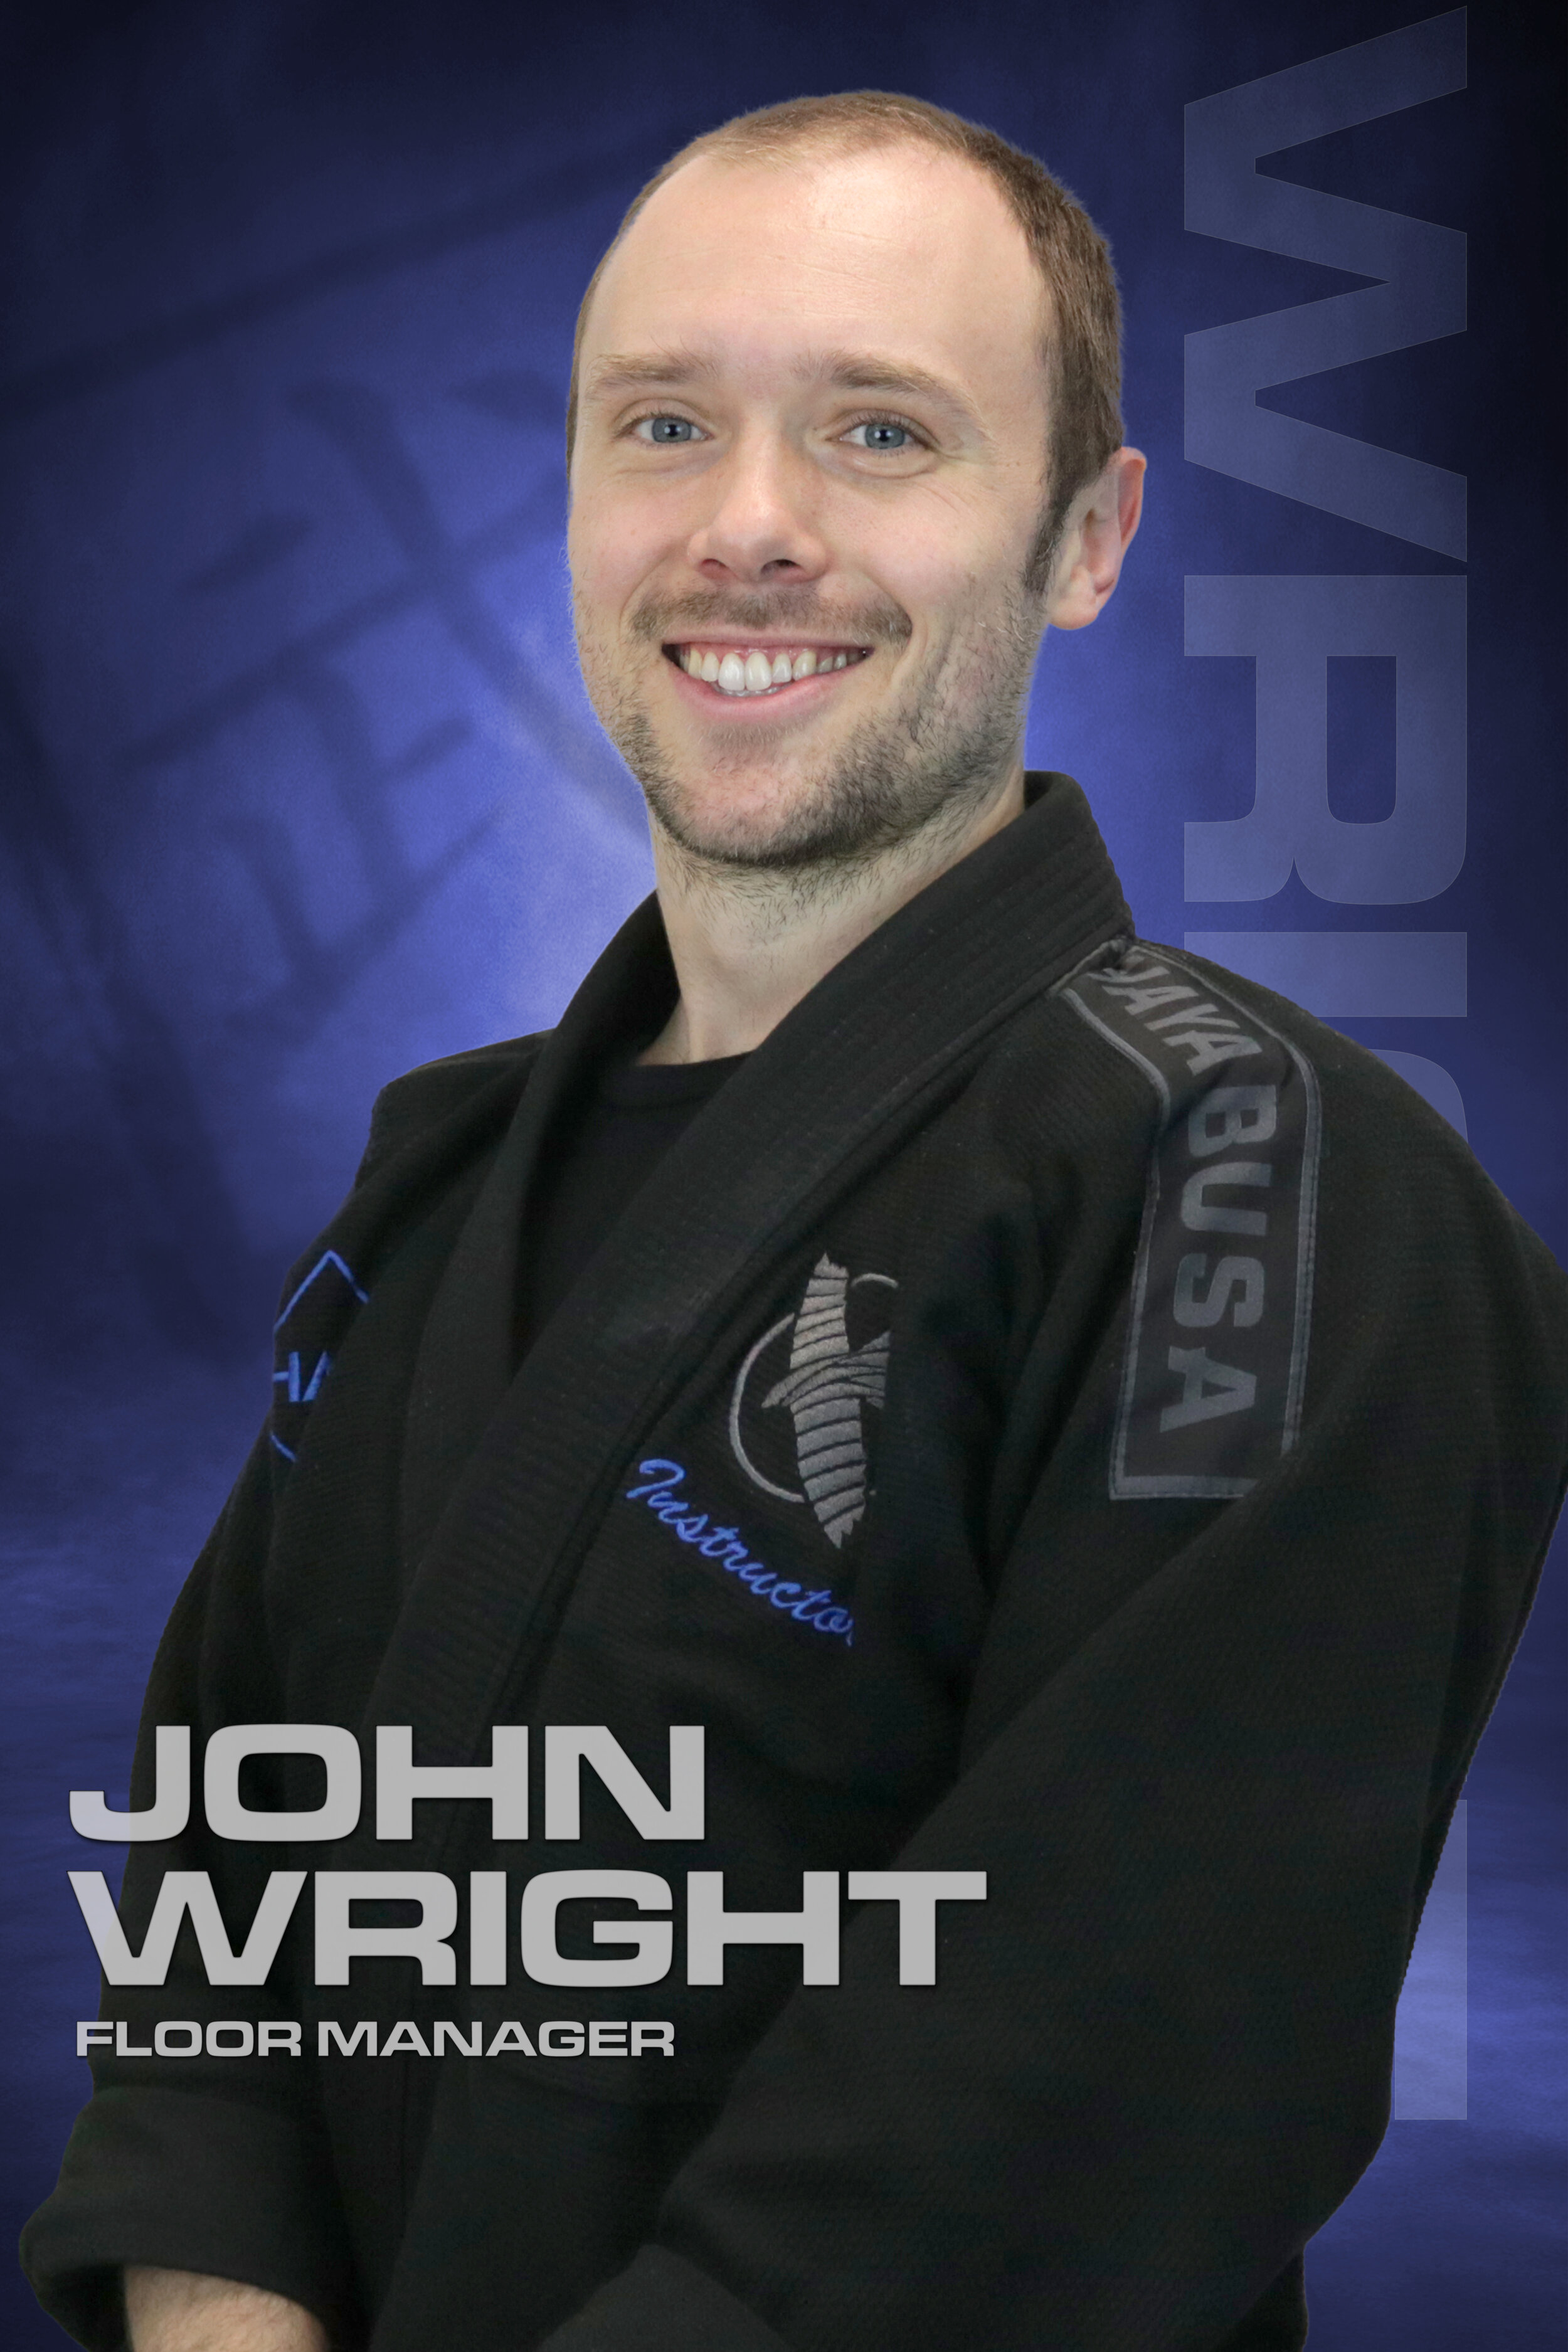 John Wright, Floor Manager